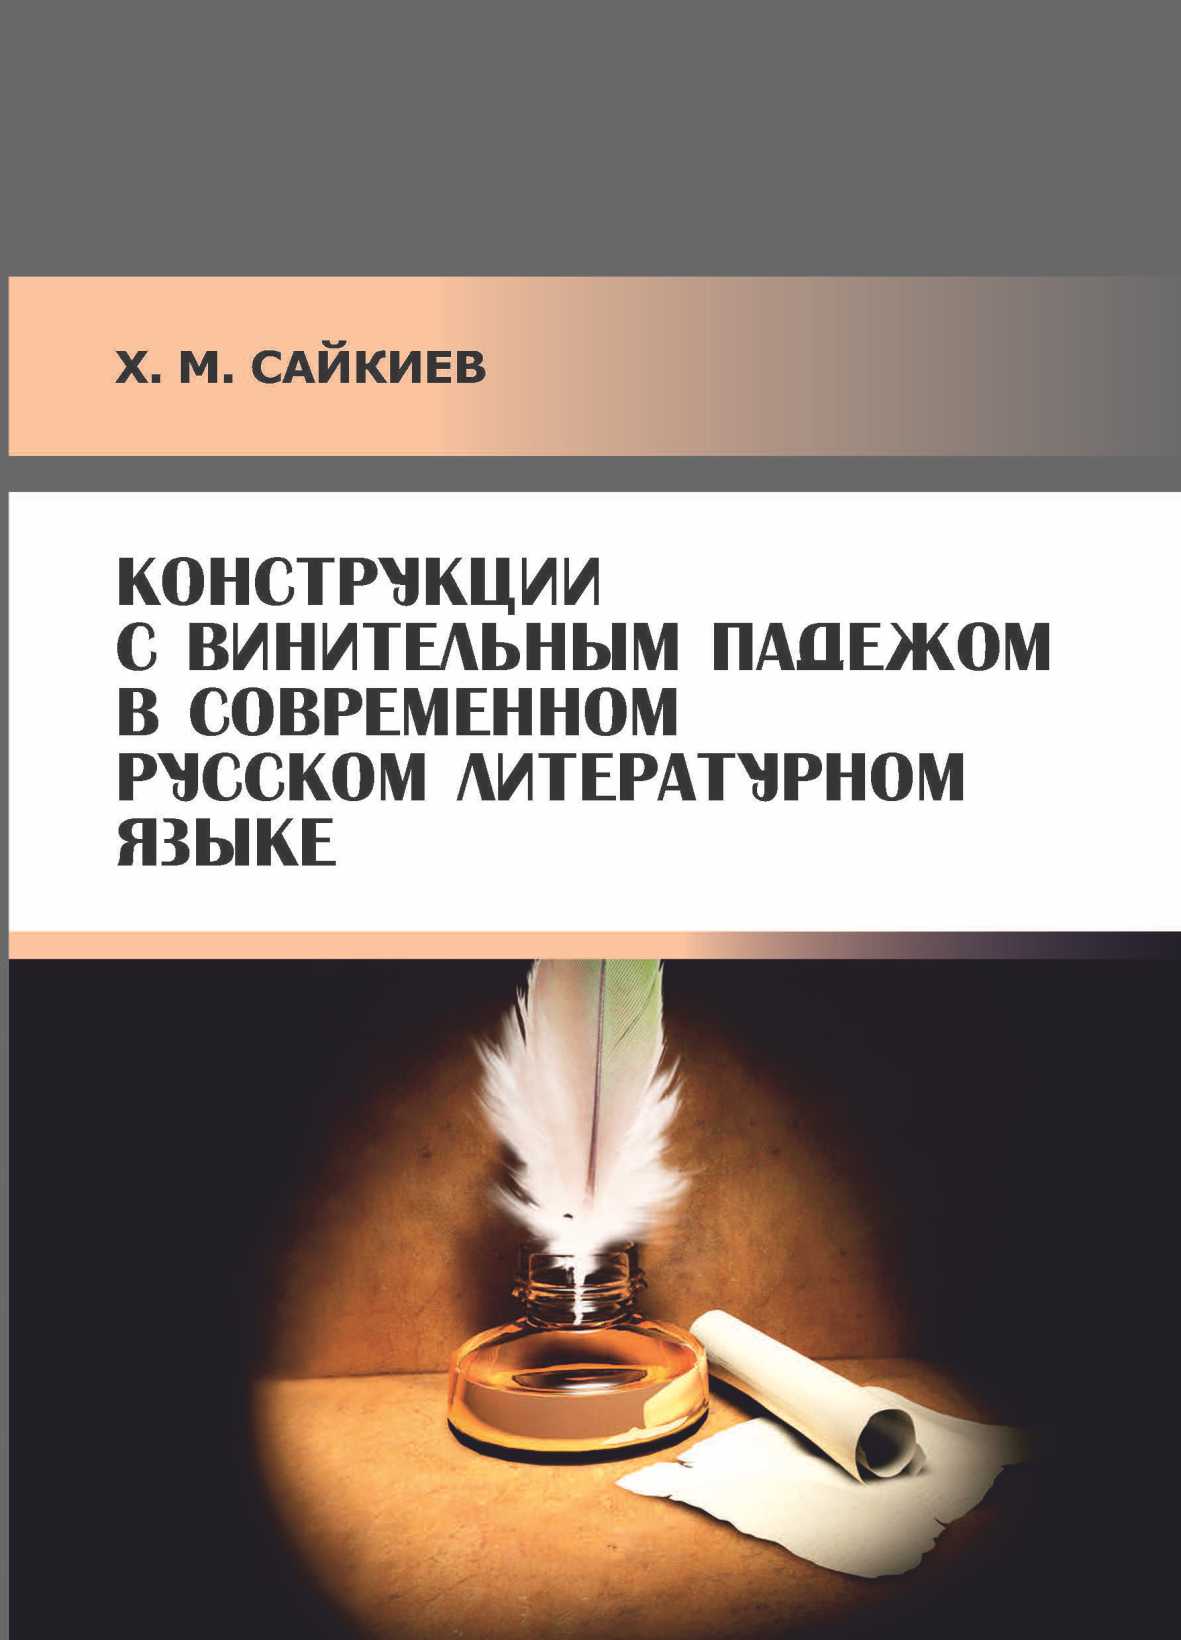 Конструкции с винительным падежом в современном русском литературном языке